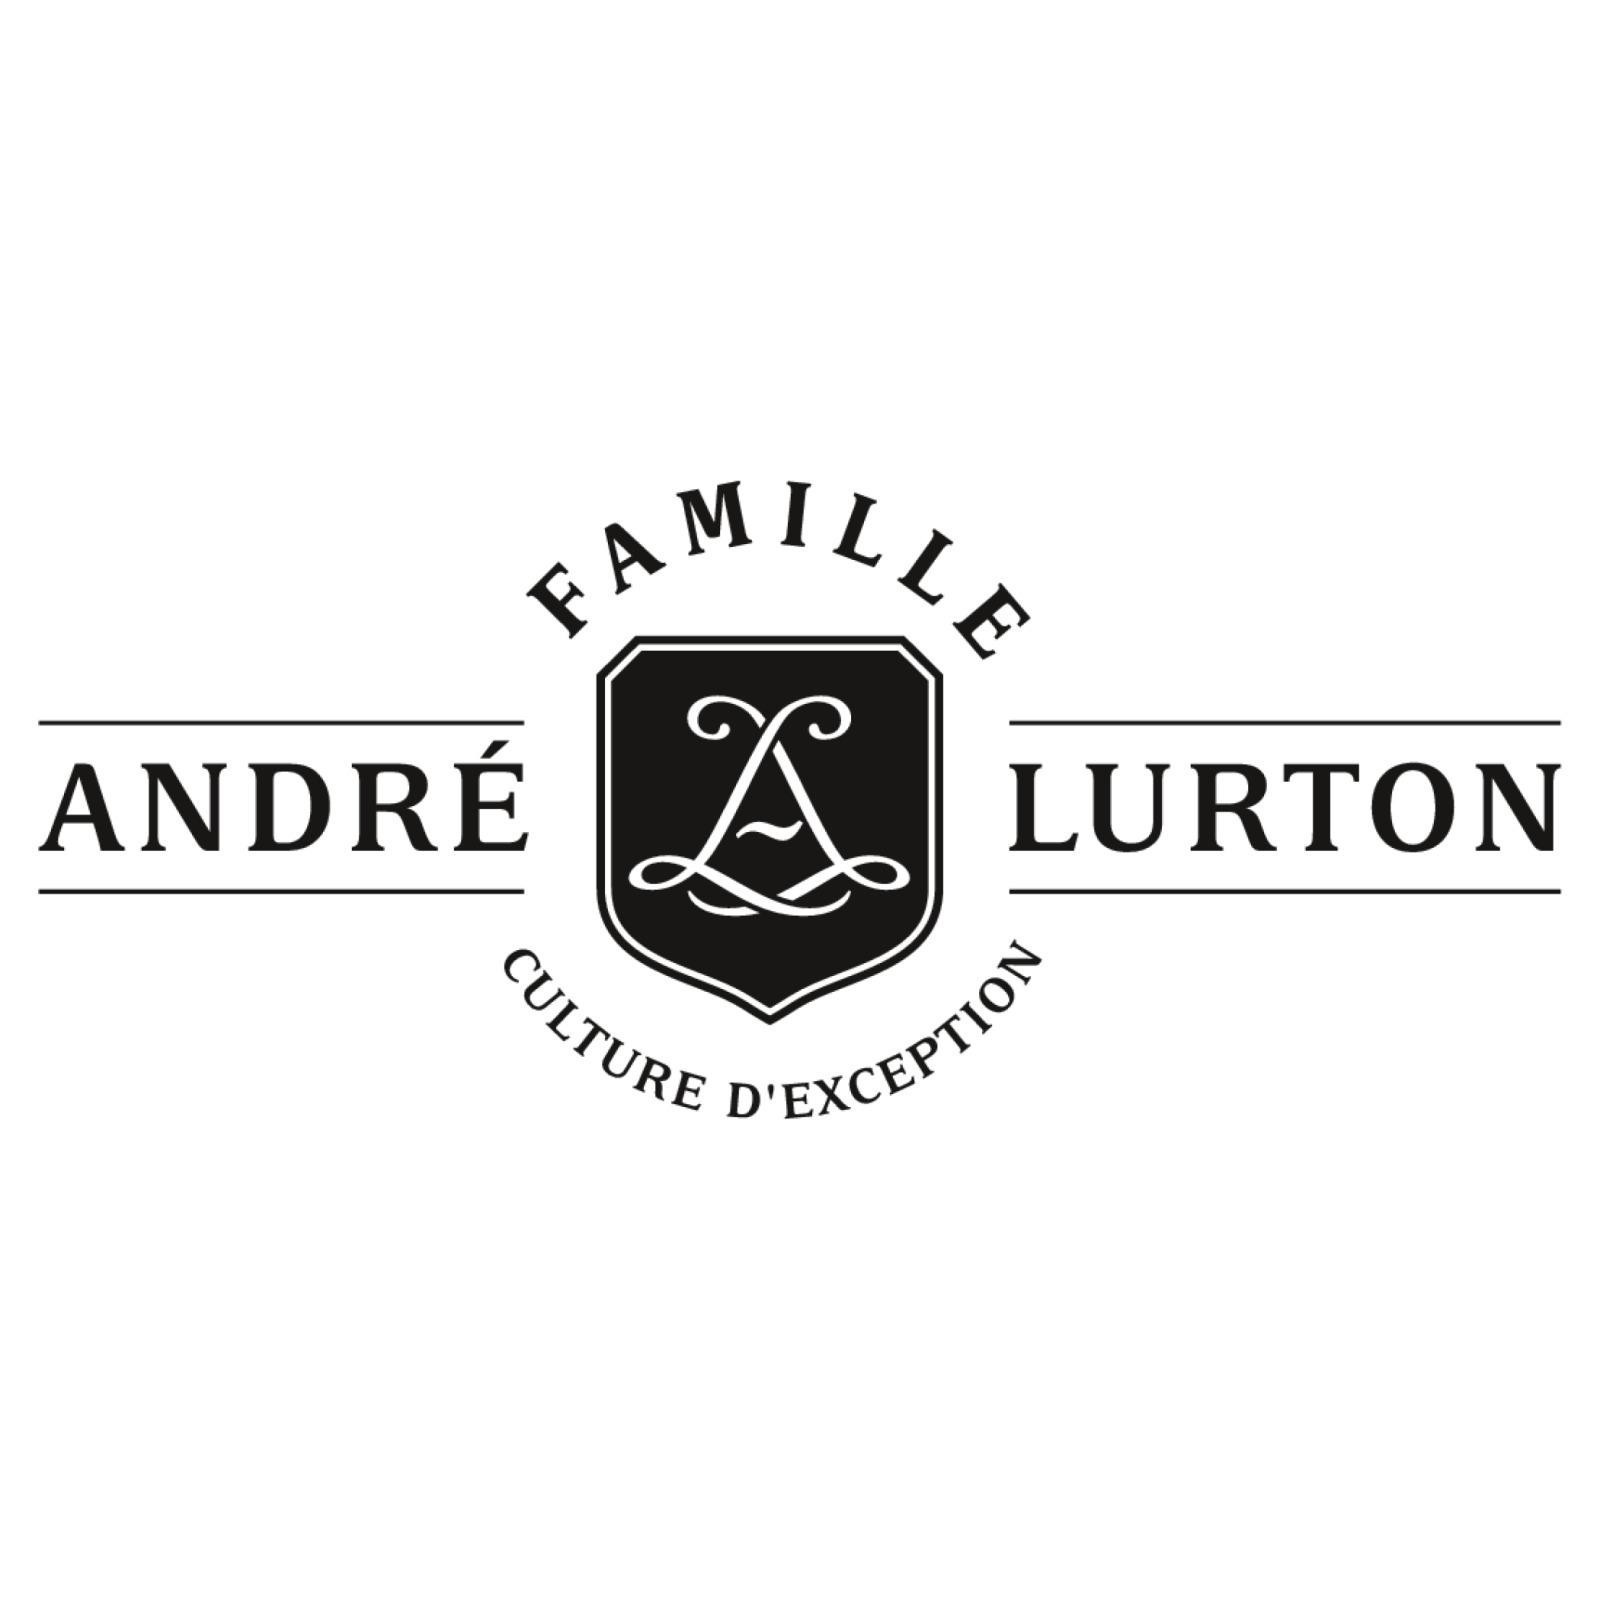  Andre Lurton 